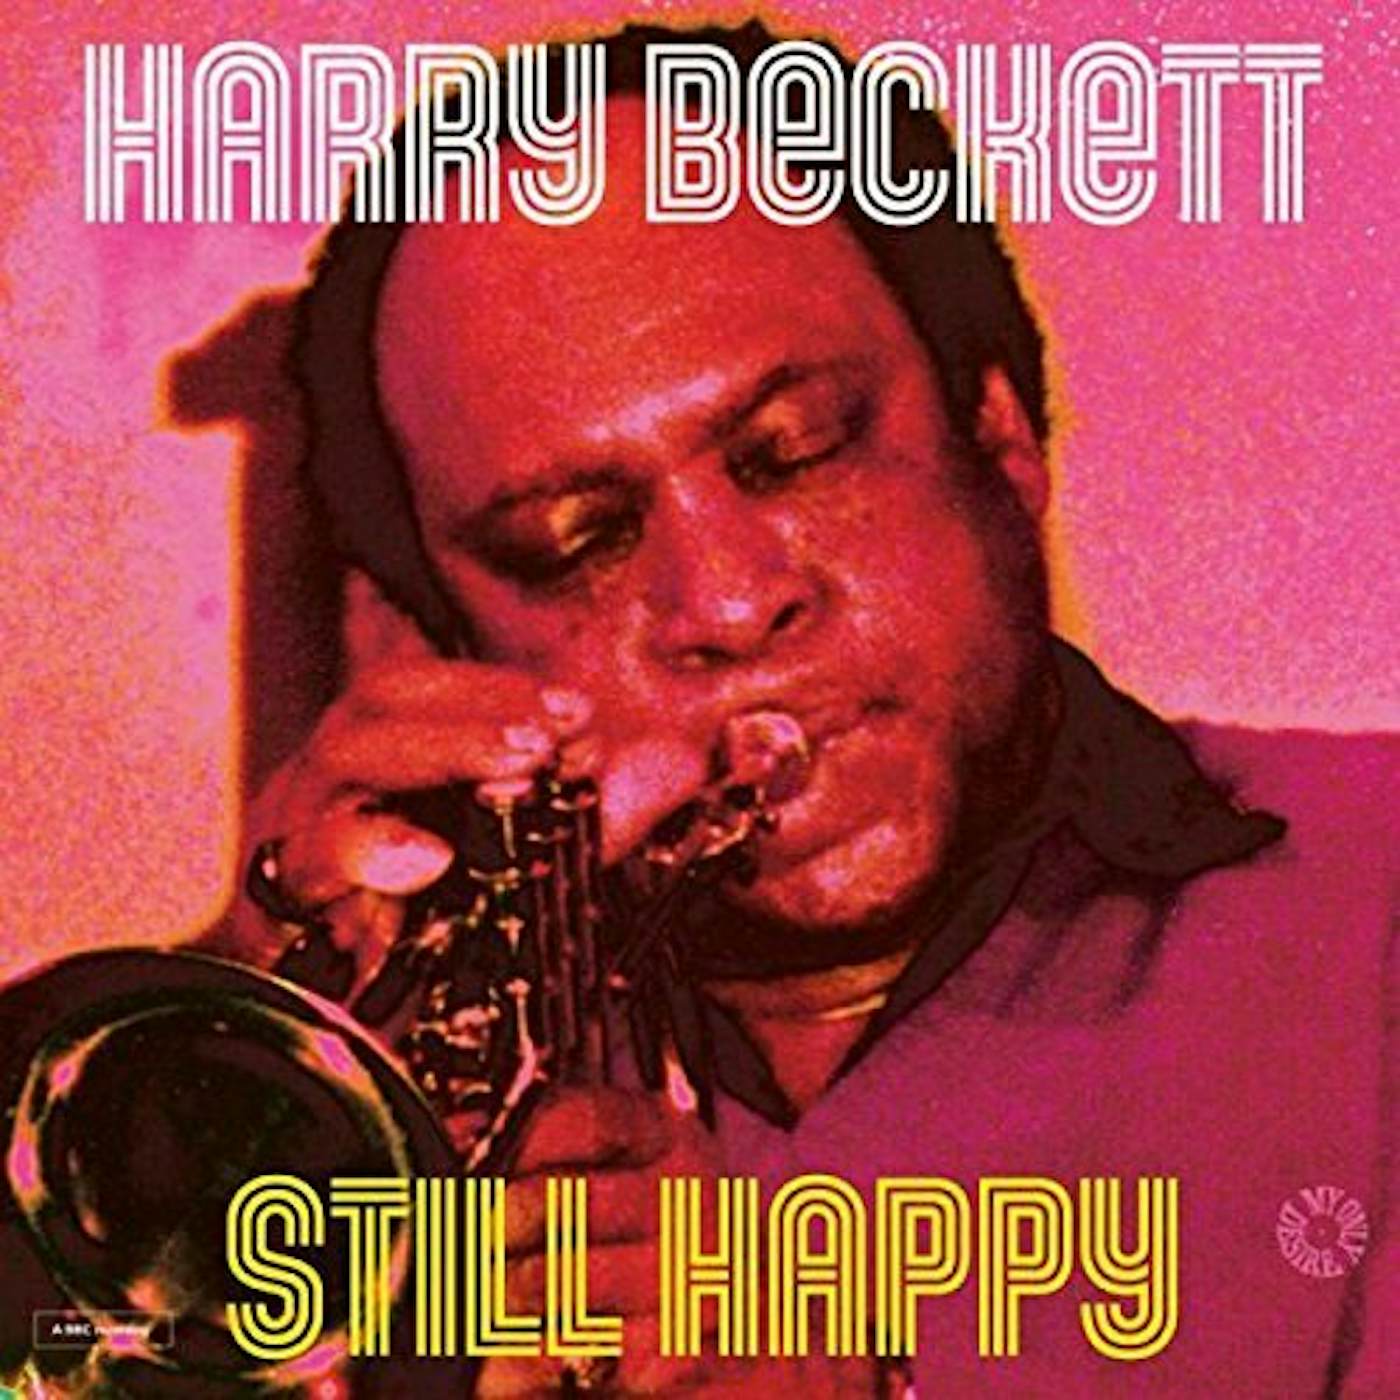 Harry Beckett Still Happy Vinyl Record